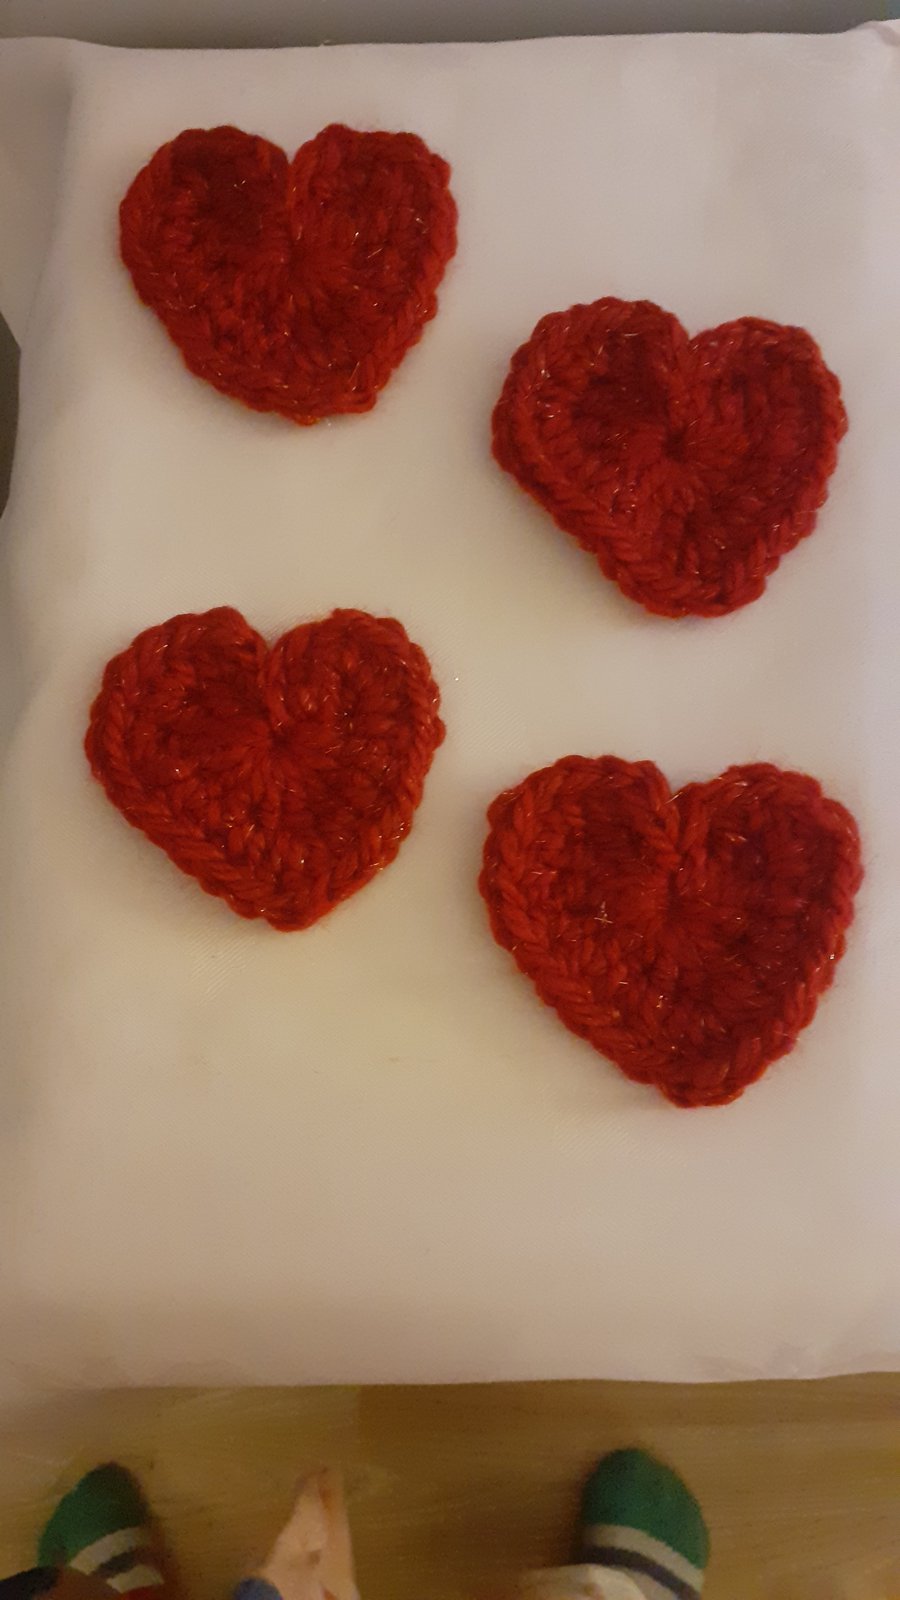 Chunky crochet hearts